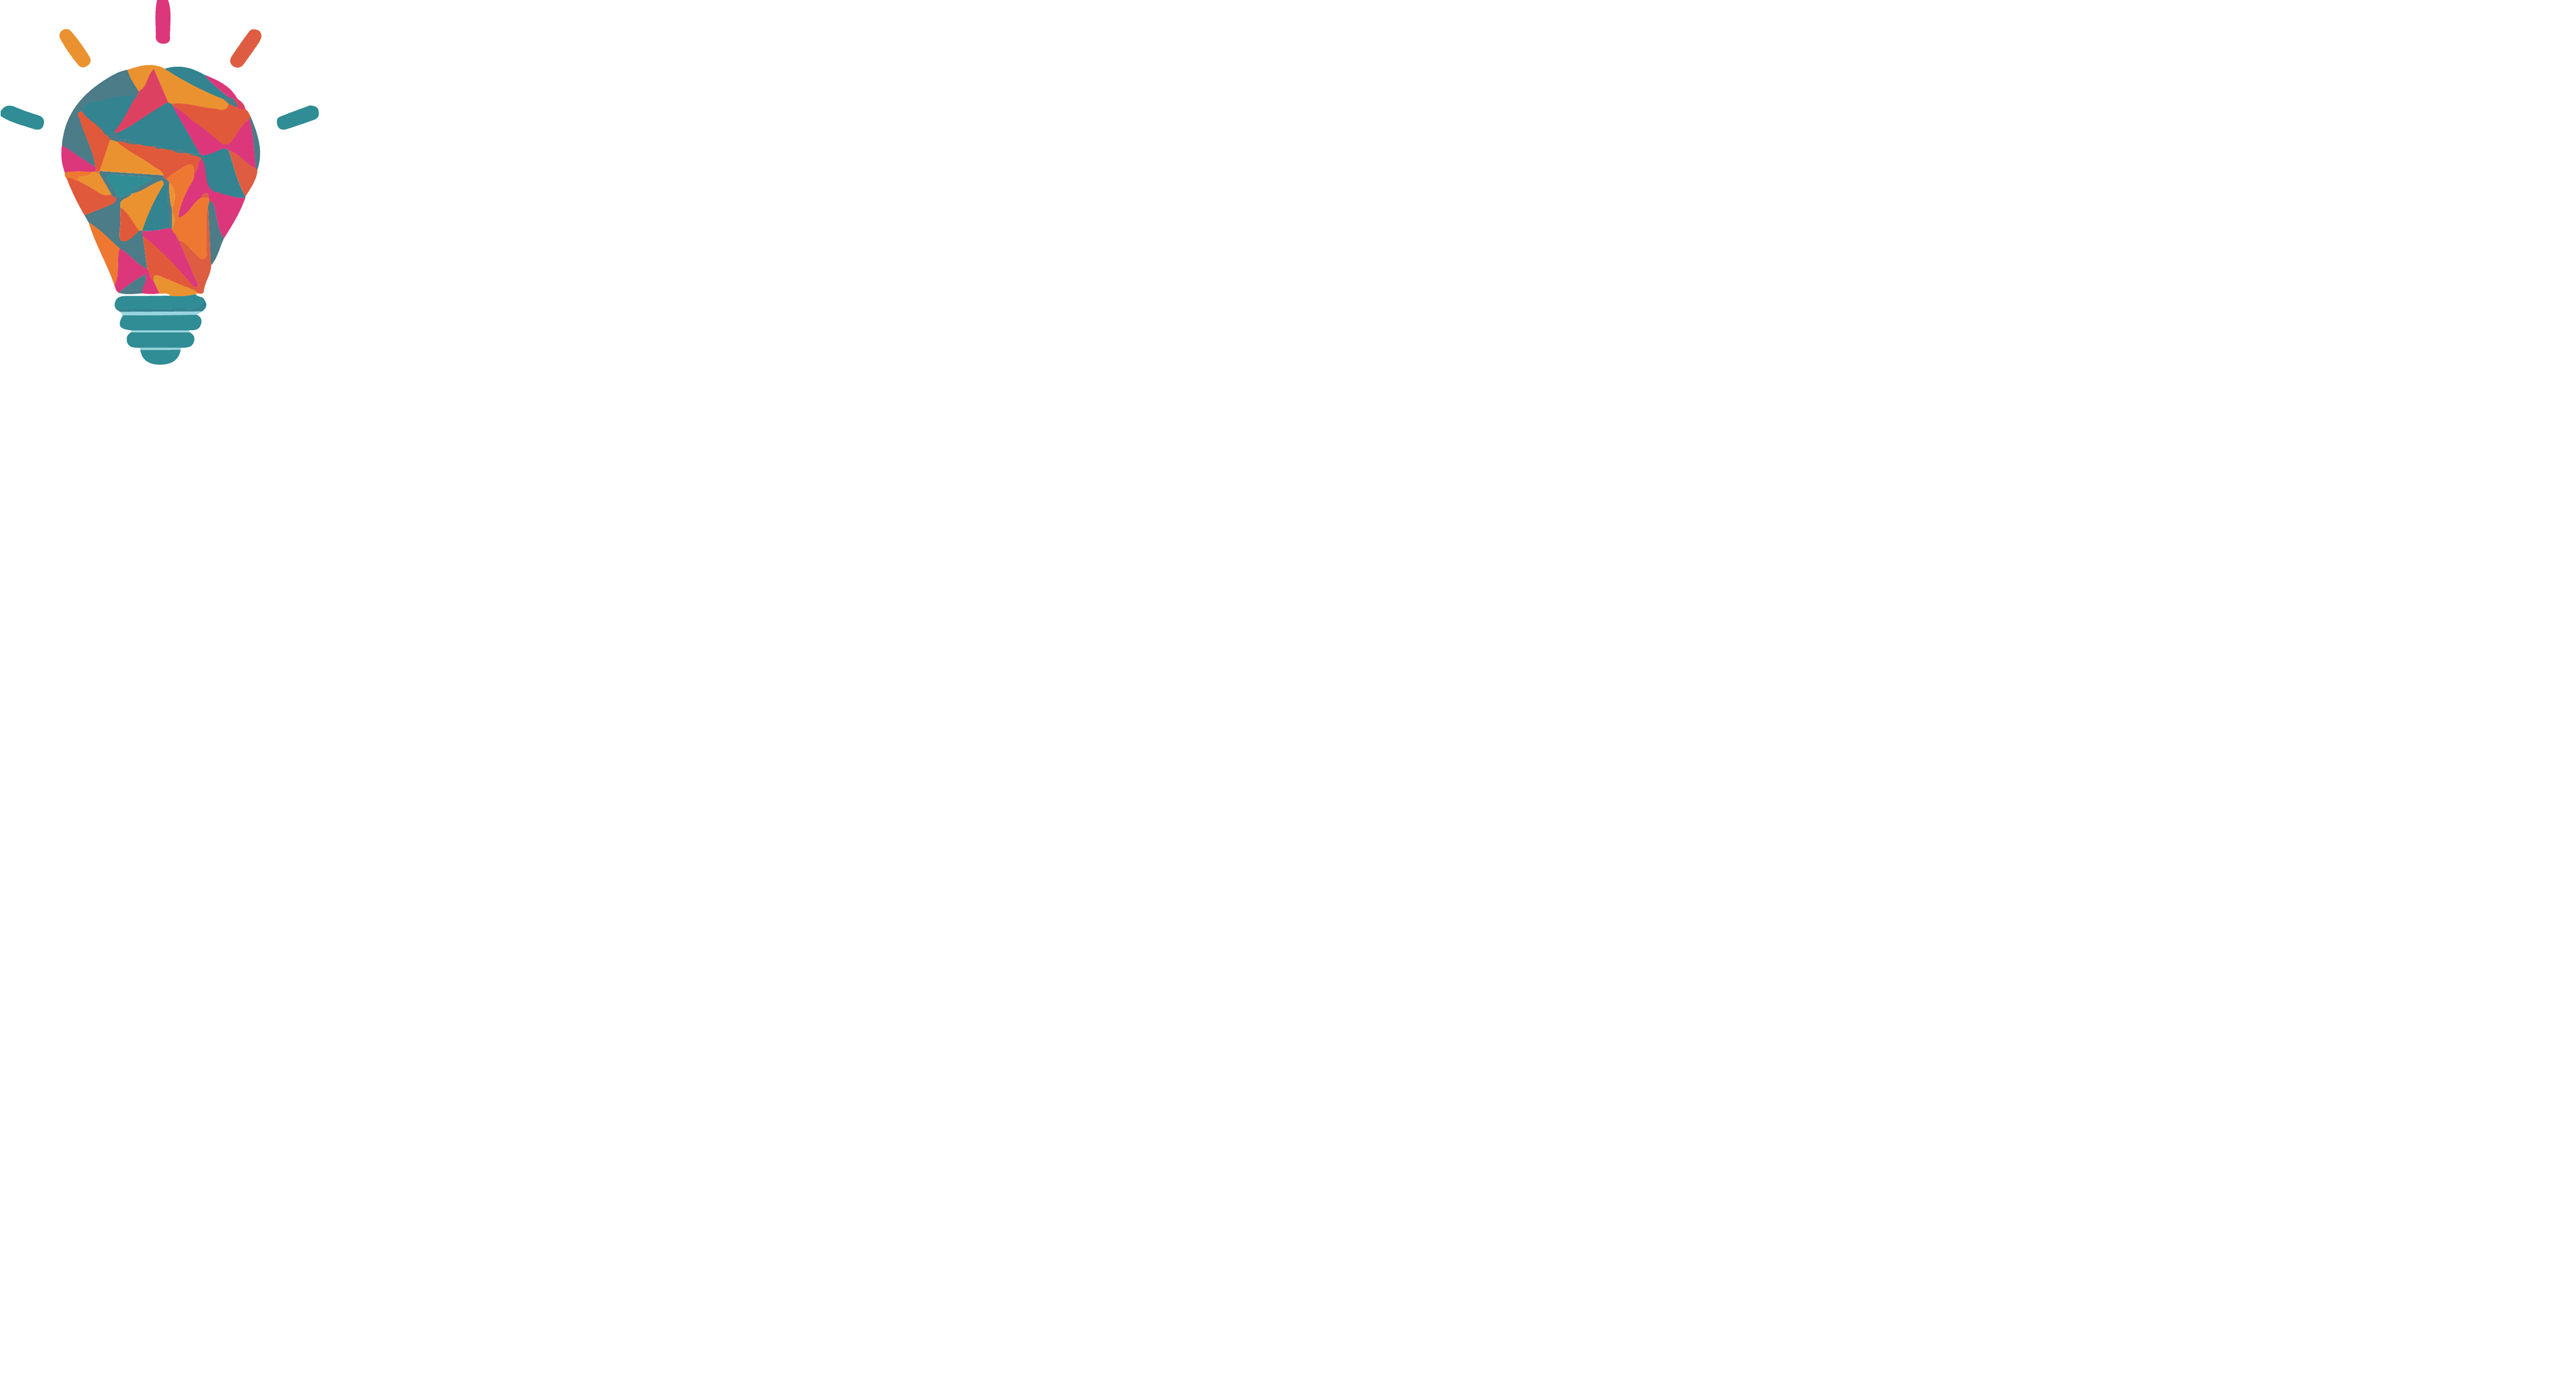 I - WFA - ITC Infotech